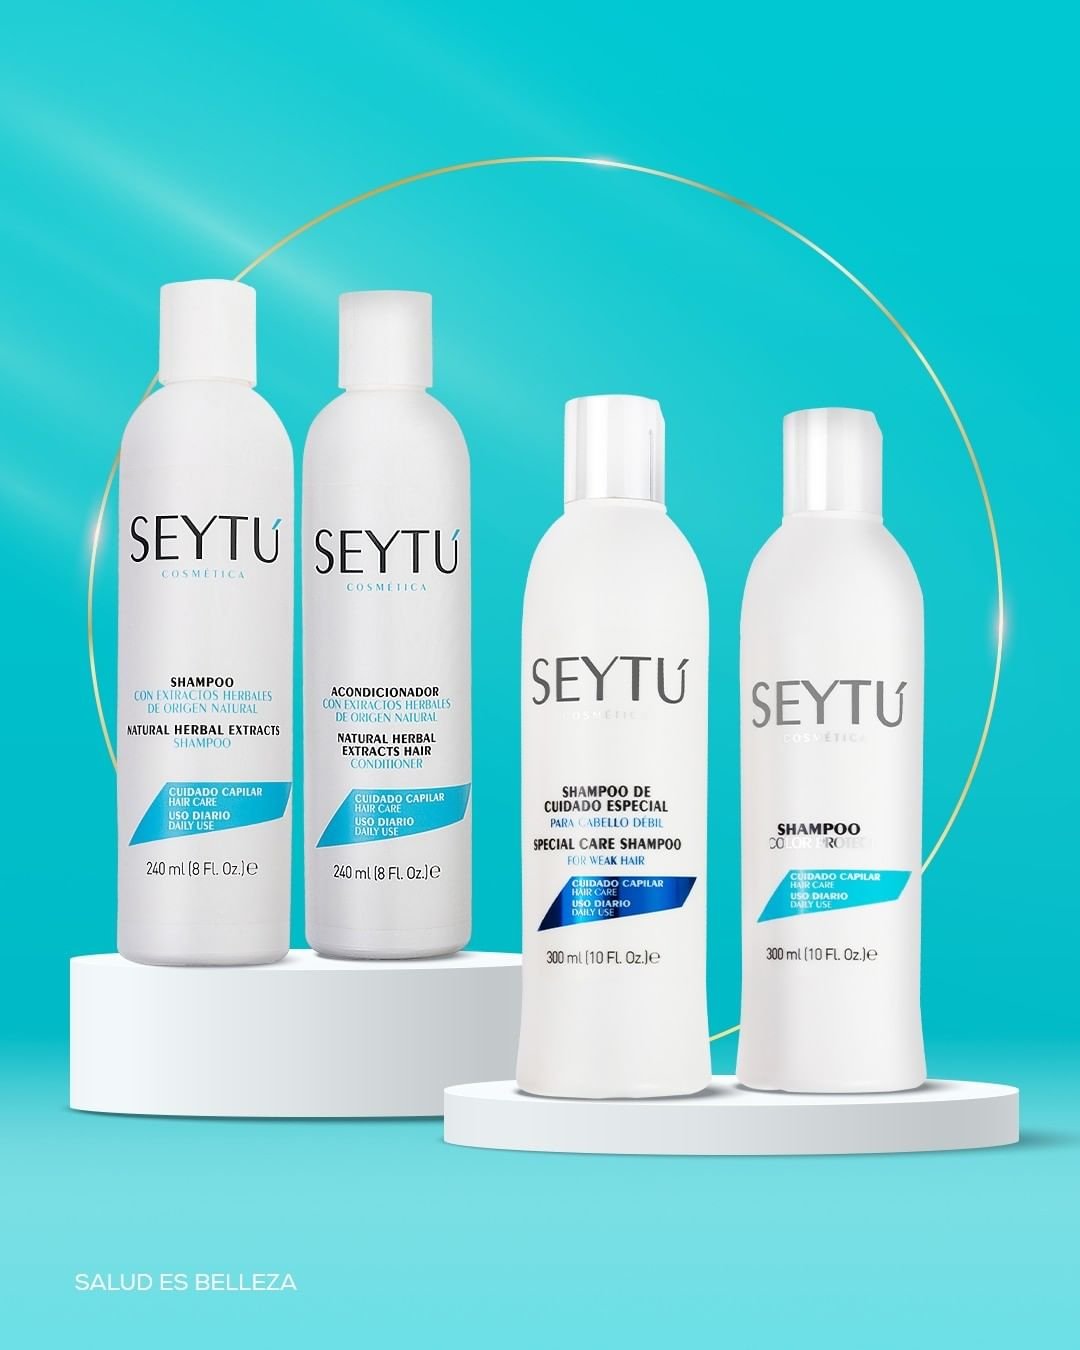 Shampoo y Acondicionador Seytu Productos linea capilar Seytu New jersey